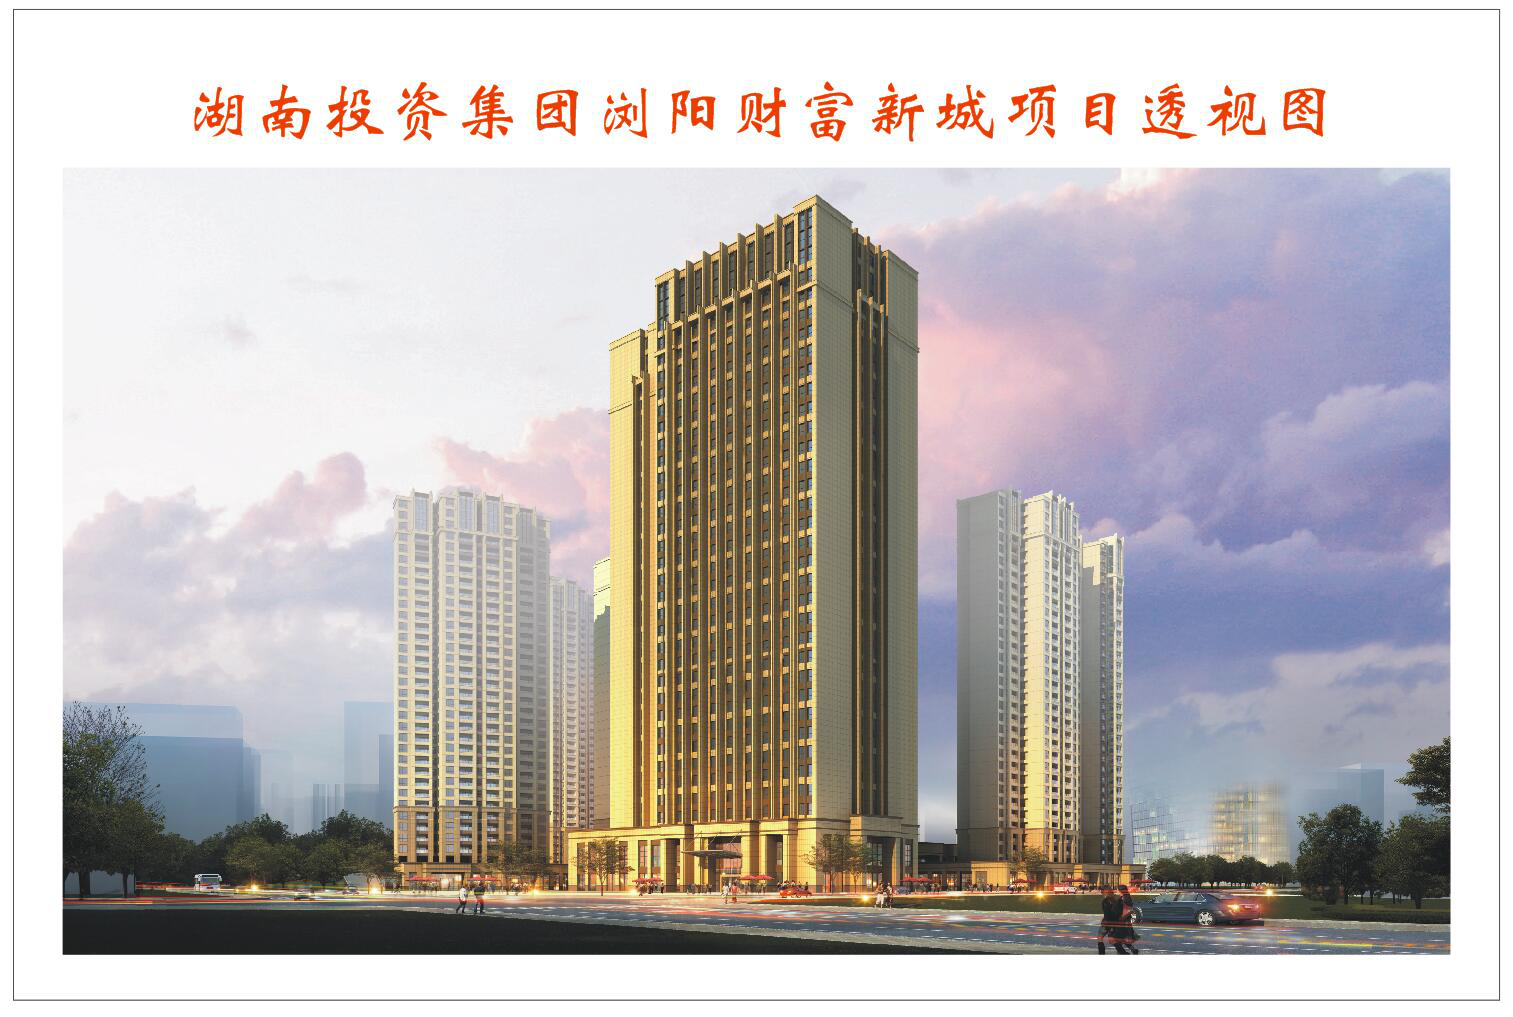 湖南瀏陽河城鎮建設發展有限公司